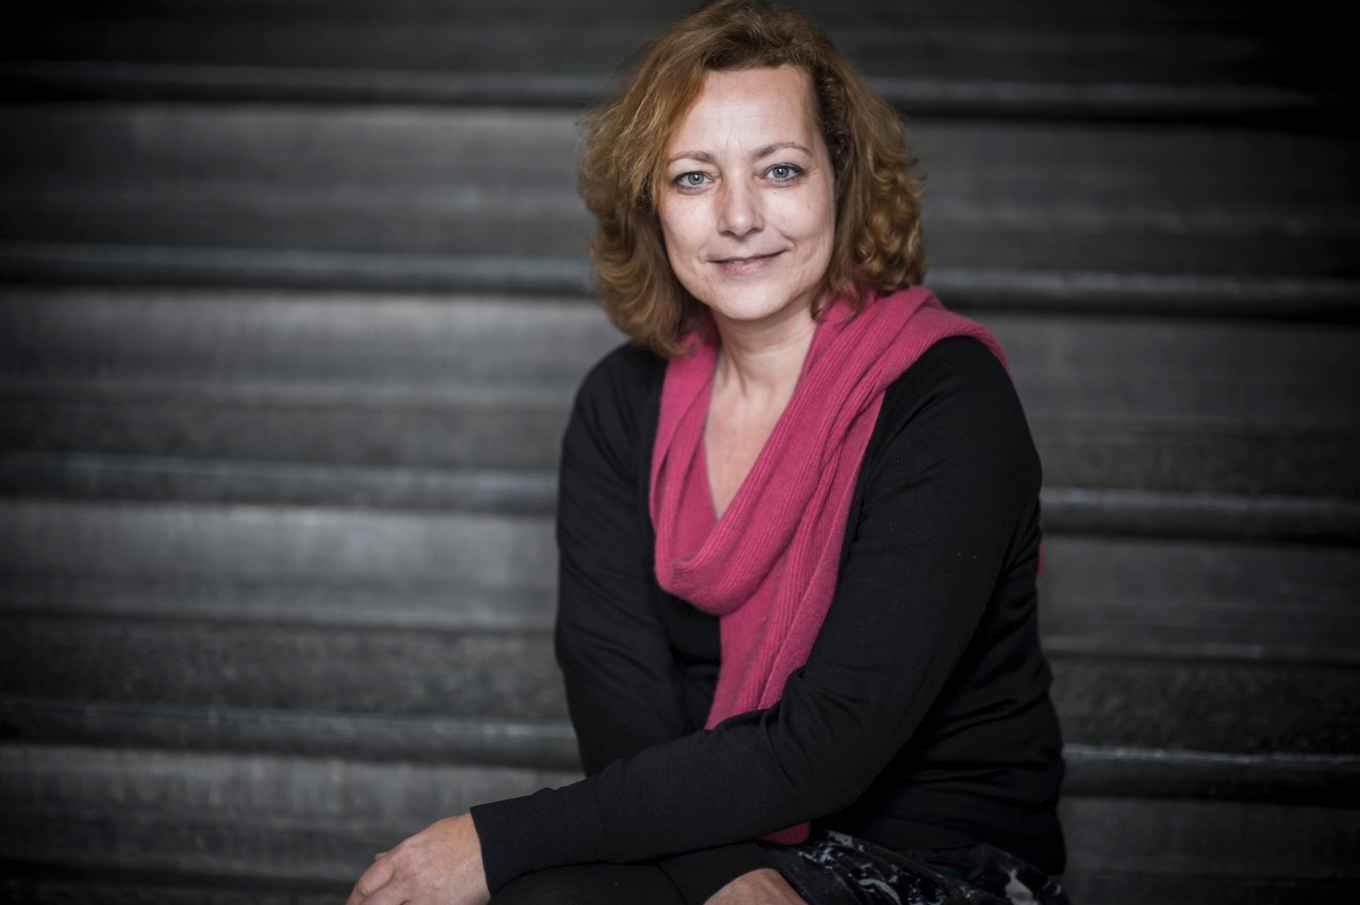 Mireille van Eechoud, Professor Information Law